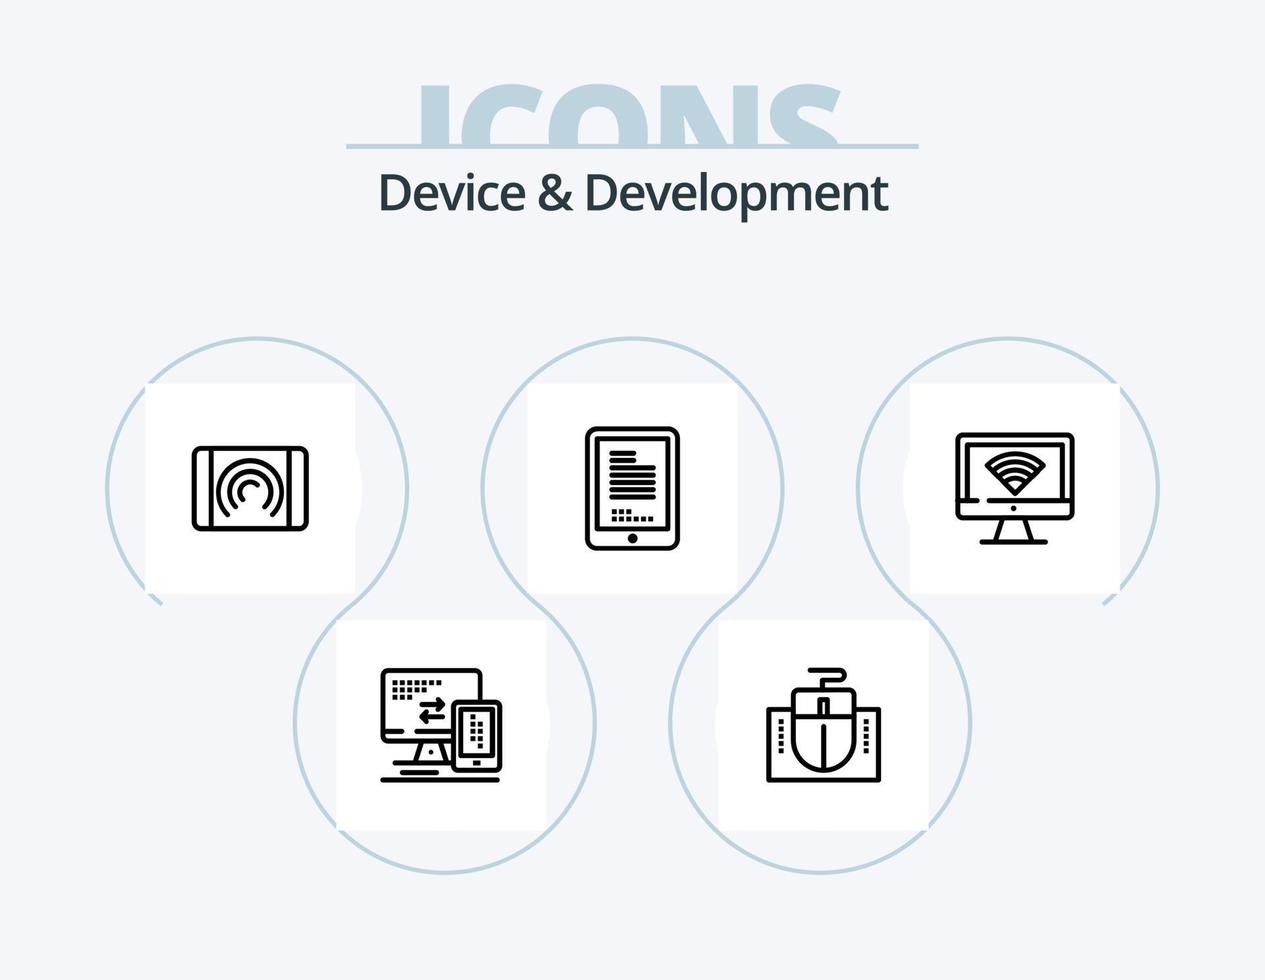 dispositivo y línea de desarrollo icon pack 5 diseño de iconos. teclado. documento. micrófono. usuario. algoritmo vector